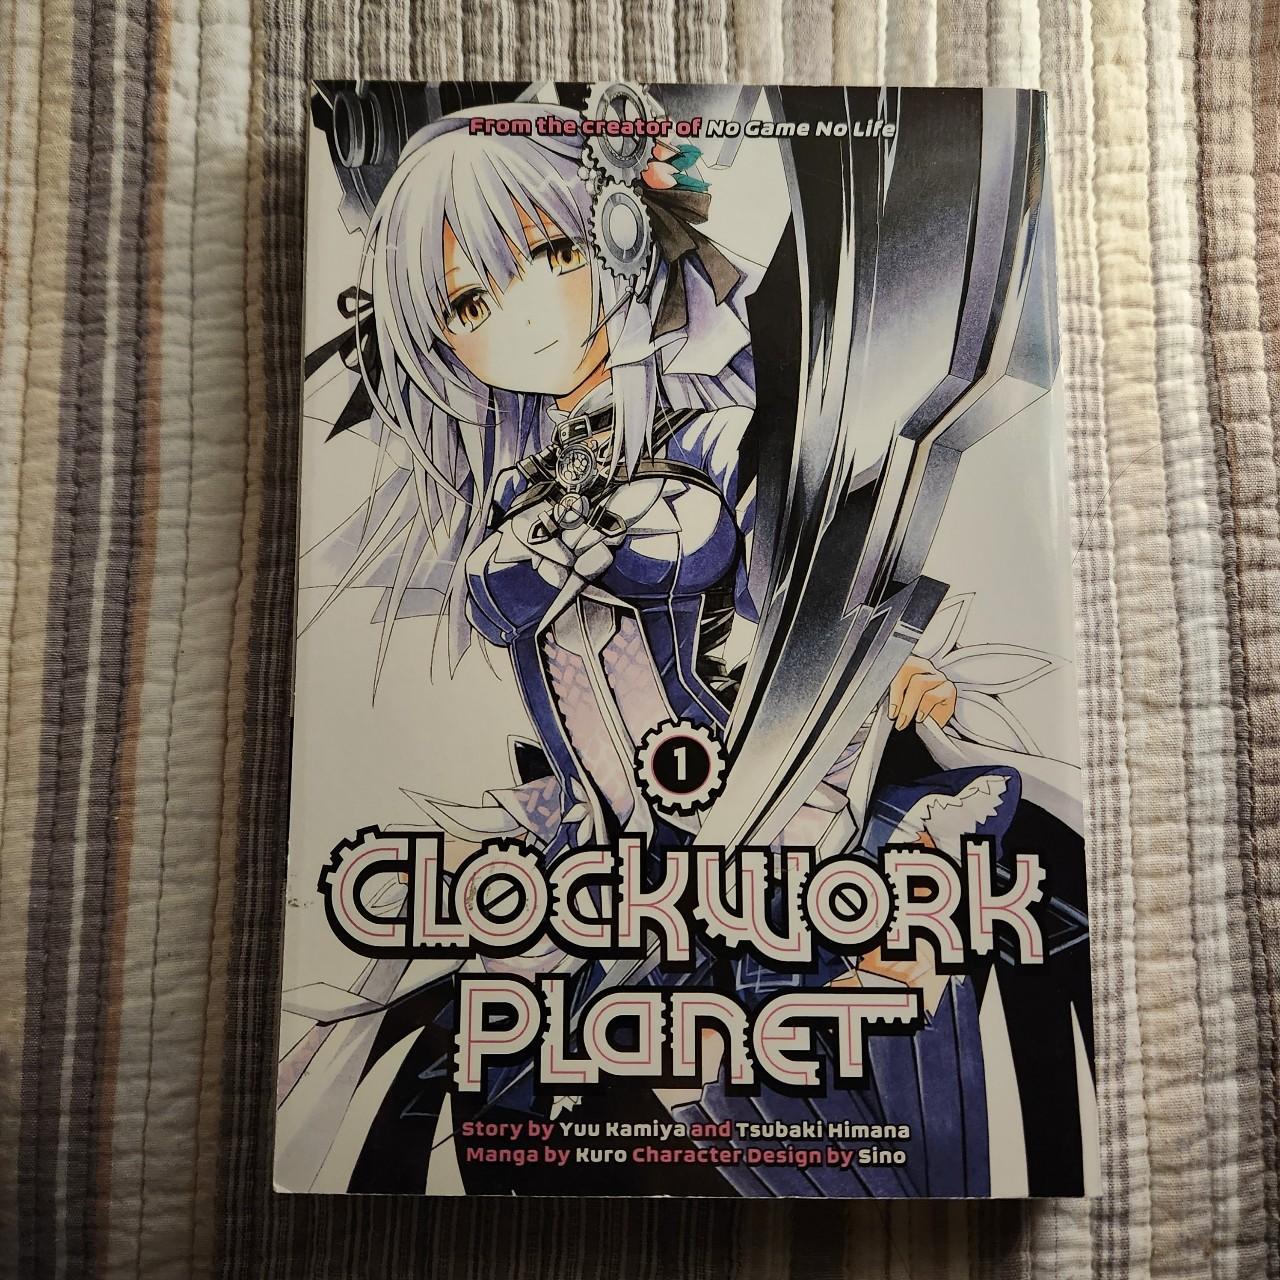 Clockwork Planet Novel Volume 1